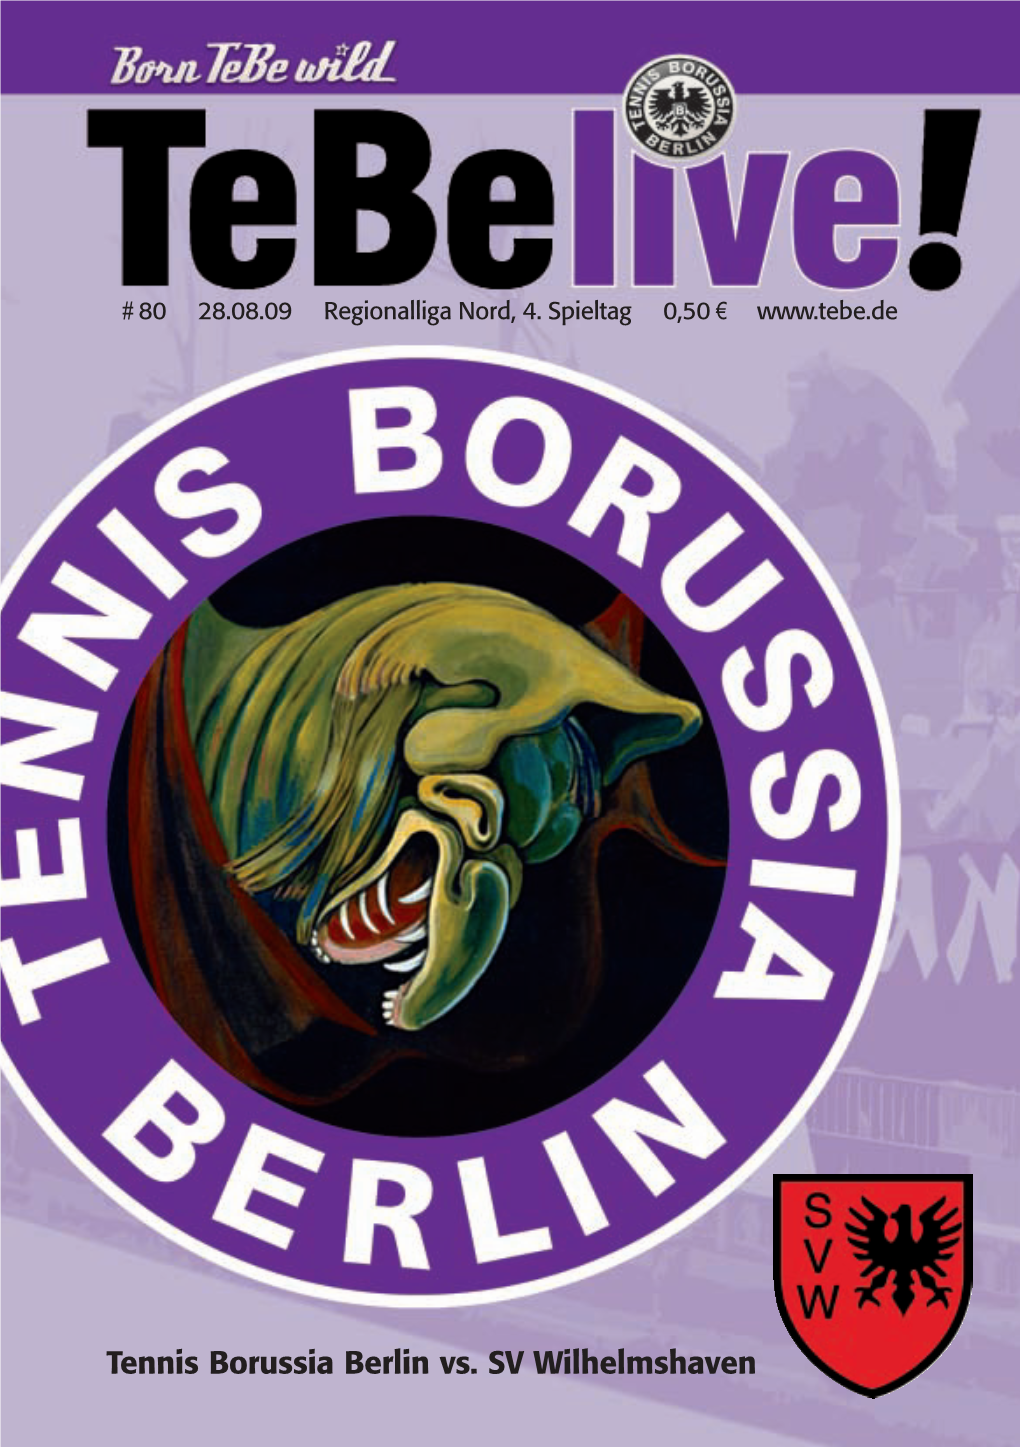 Tennis Borussia Berlin Vs. SV Wilhelmshaven